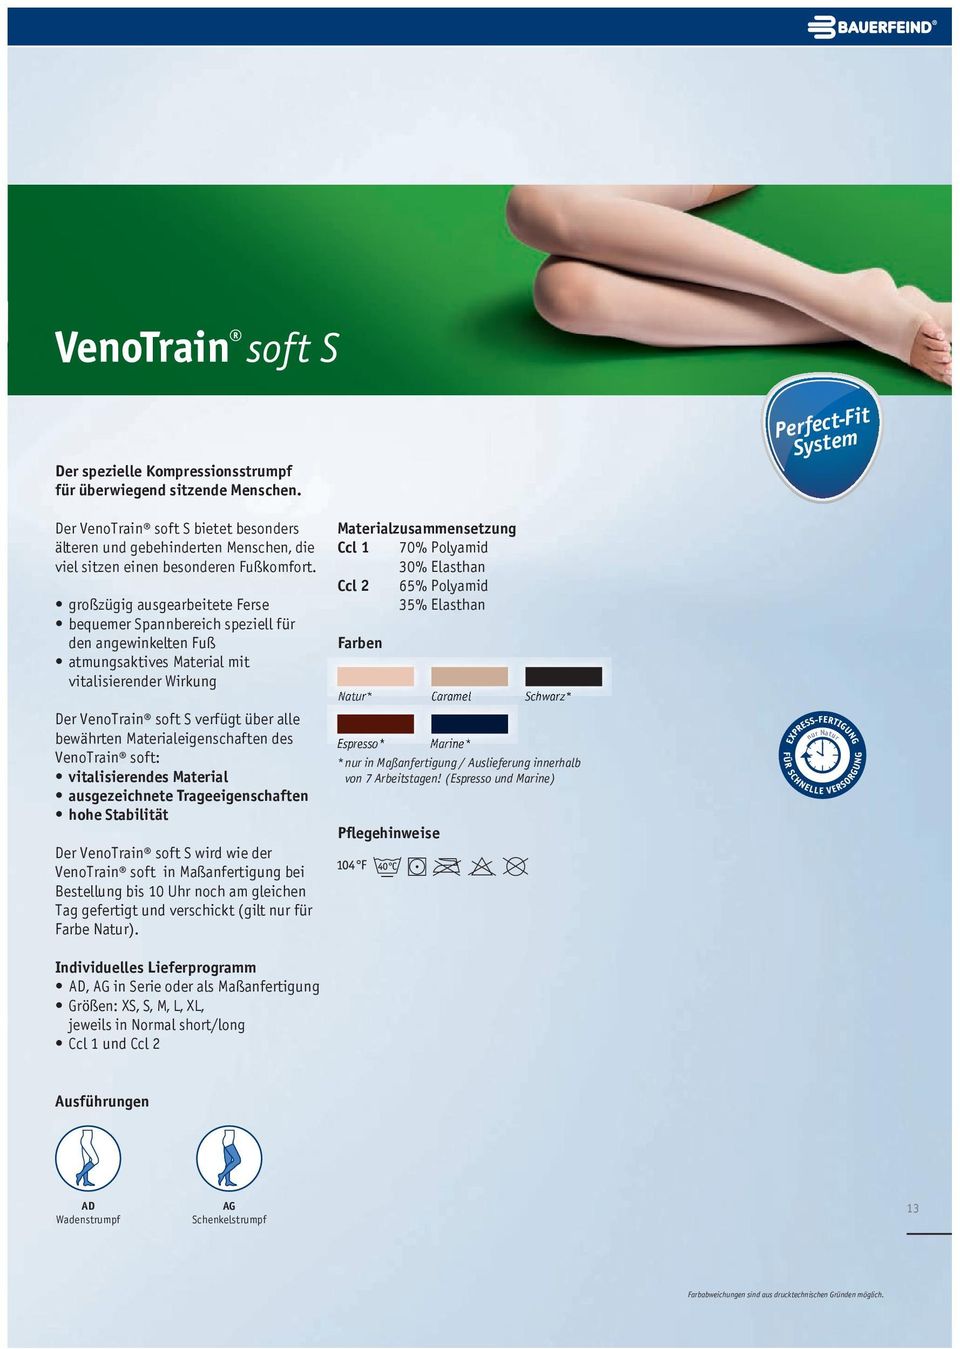 großzügig ausgearbeitete Ferse bequemer Spannbereich speziell für den angewinkelten Fuß atmungsaktives Material mit vitalisierender Wirkung Der VenoTrain soft S verfügt über alle bewährten